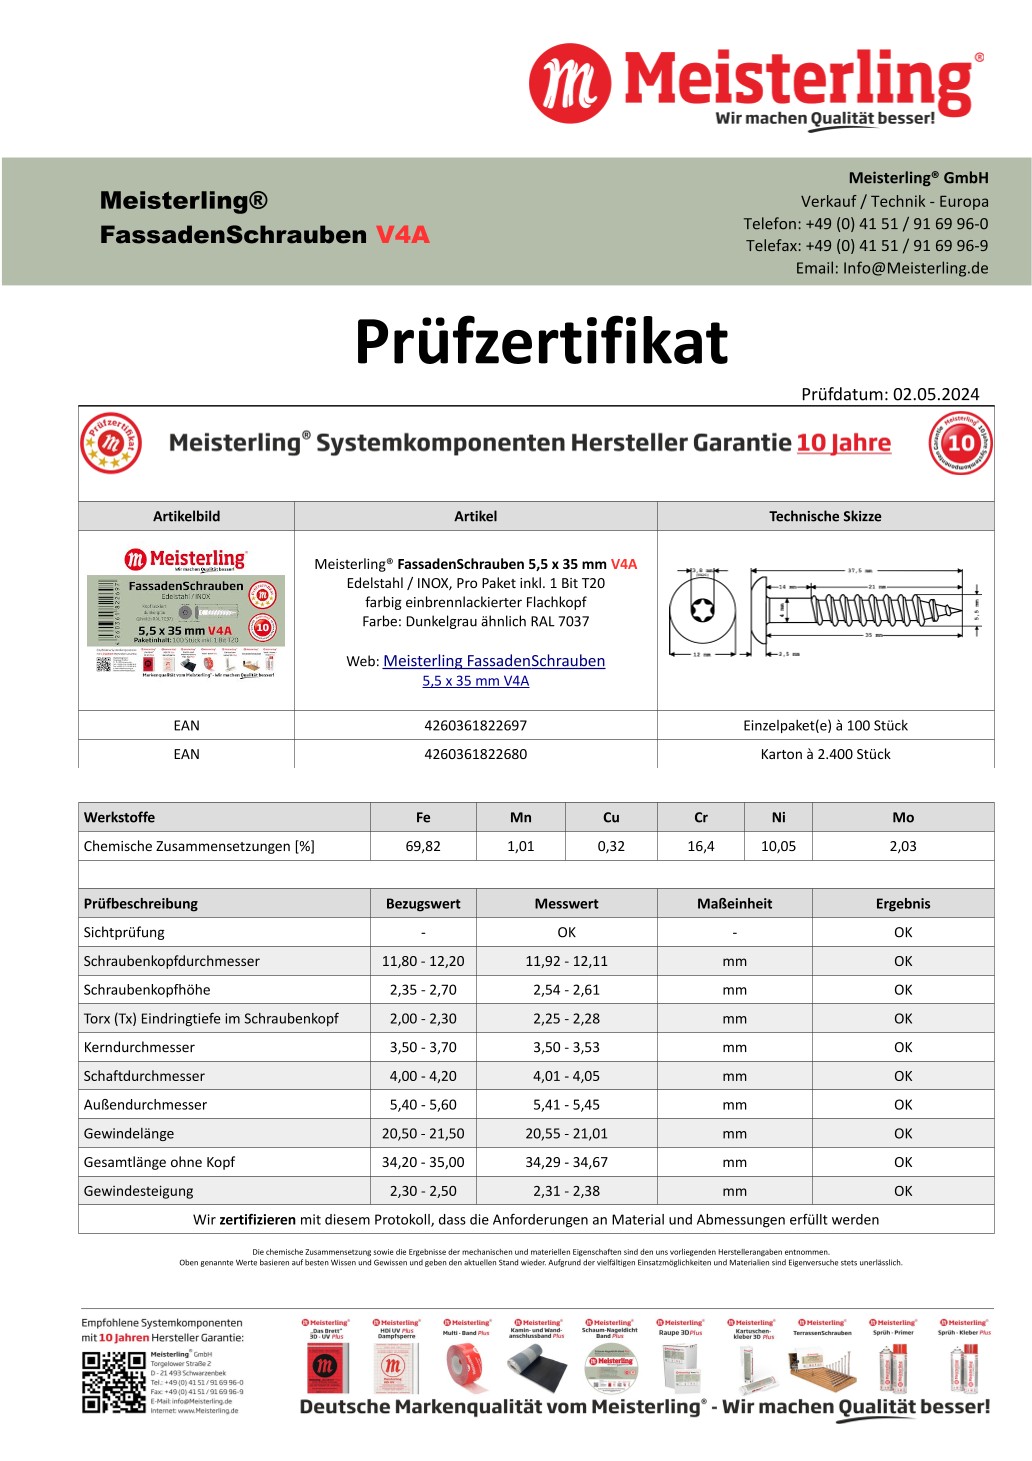 Prüfzertifikat Meisterling® FassadenSchrauben 5,5 x 35 mm V4a dunkelgrau